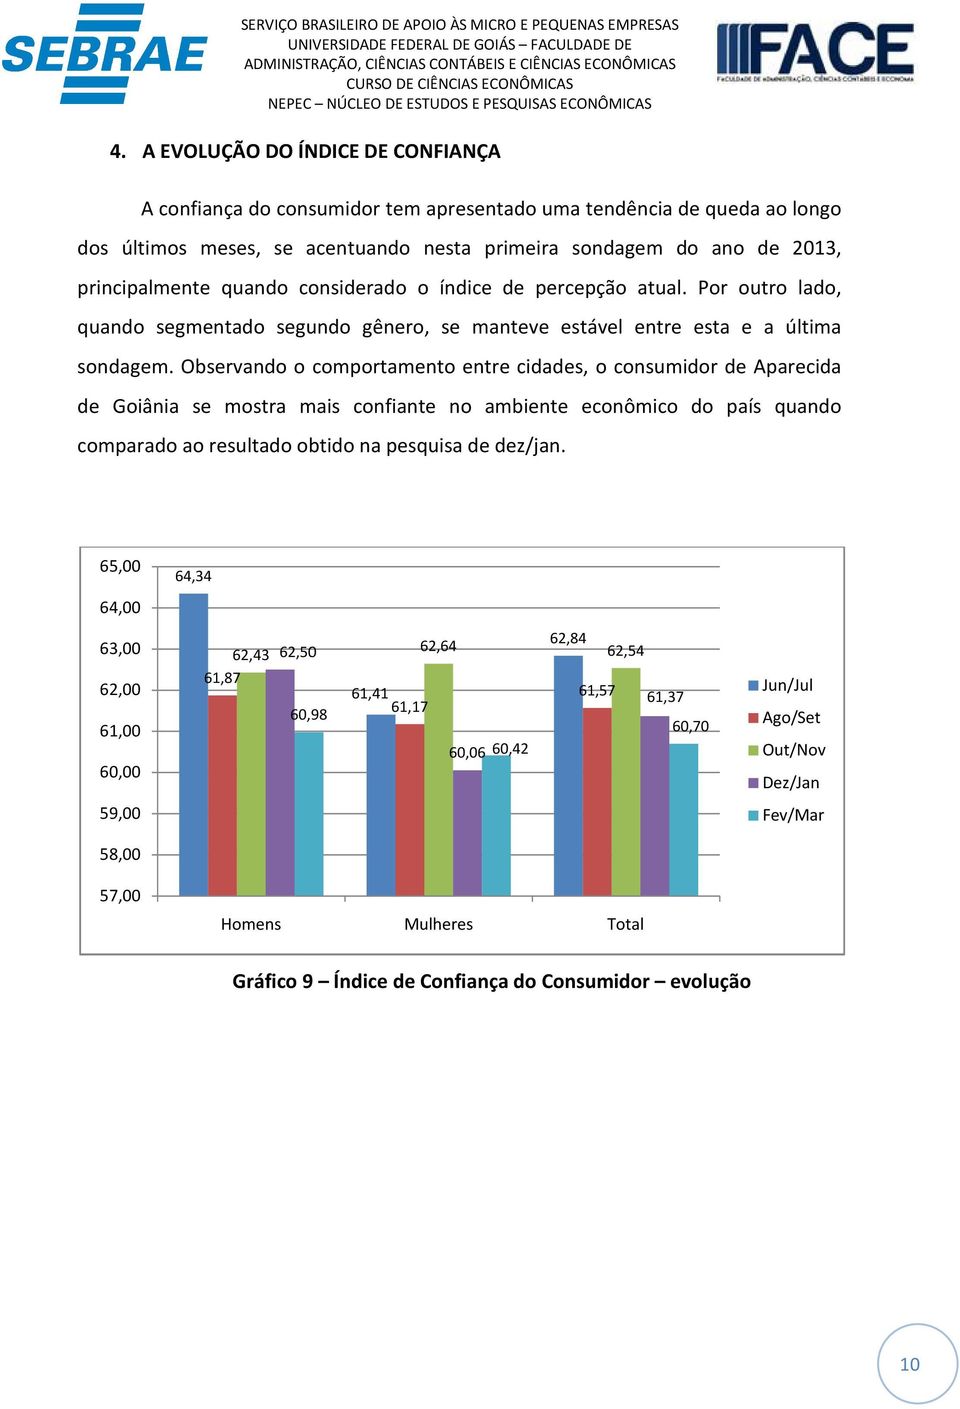 Observando o comportamento entre cidades, o consumidor de Aparecida de Goiânia se mostra mais confiante no ambiente econômico do país quando comparado ao resultado obtido na pesquisa de dez/jan.